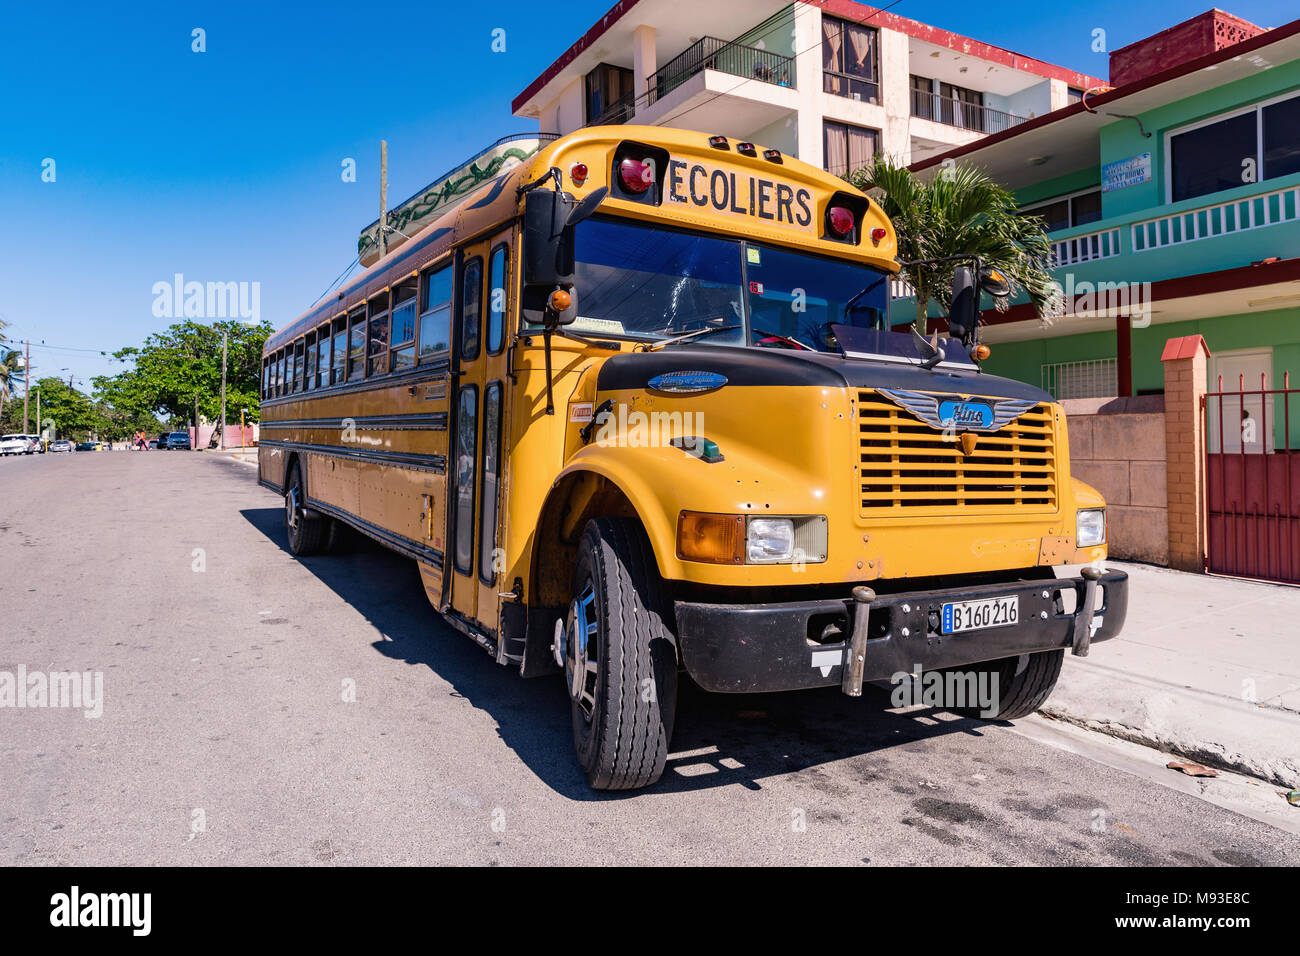 VARADERO, CUBA - MARCH 04, 2018: American school bus in Varadero. Old american school bus on the street. Cuba. Stock Photo